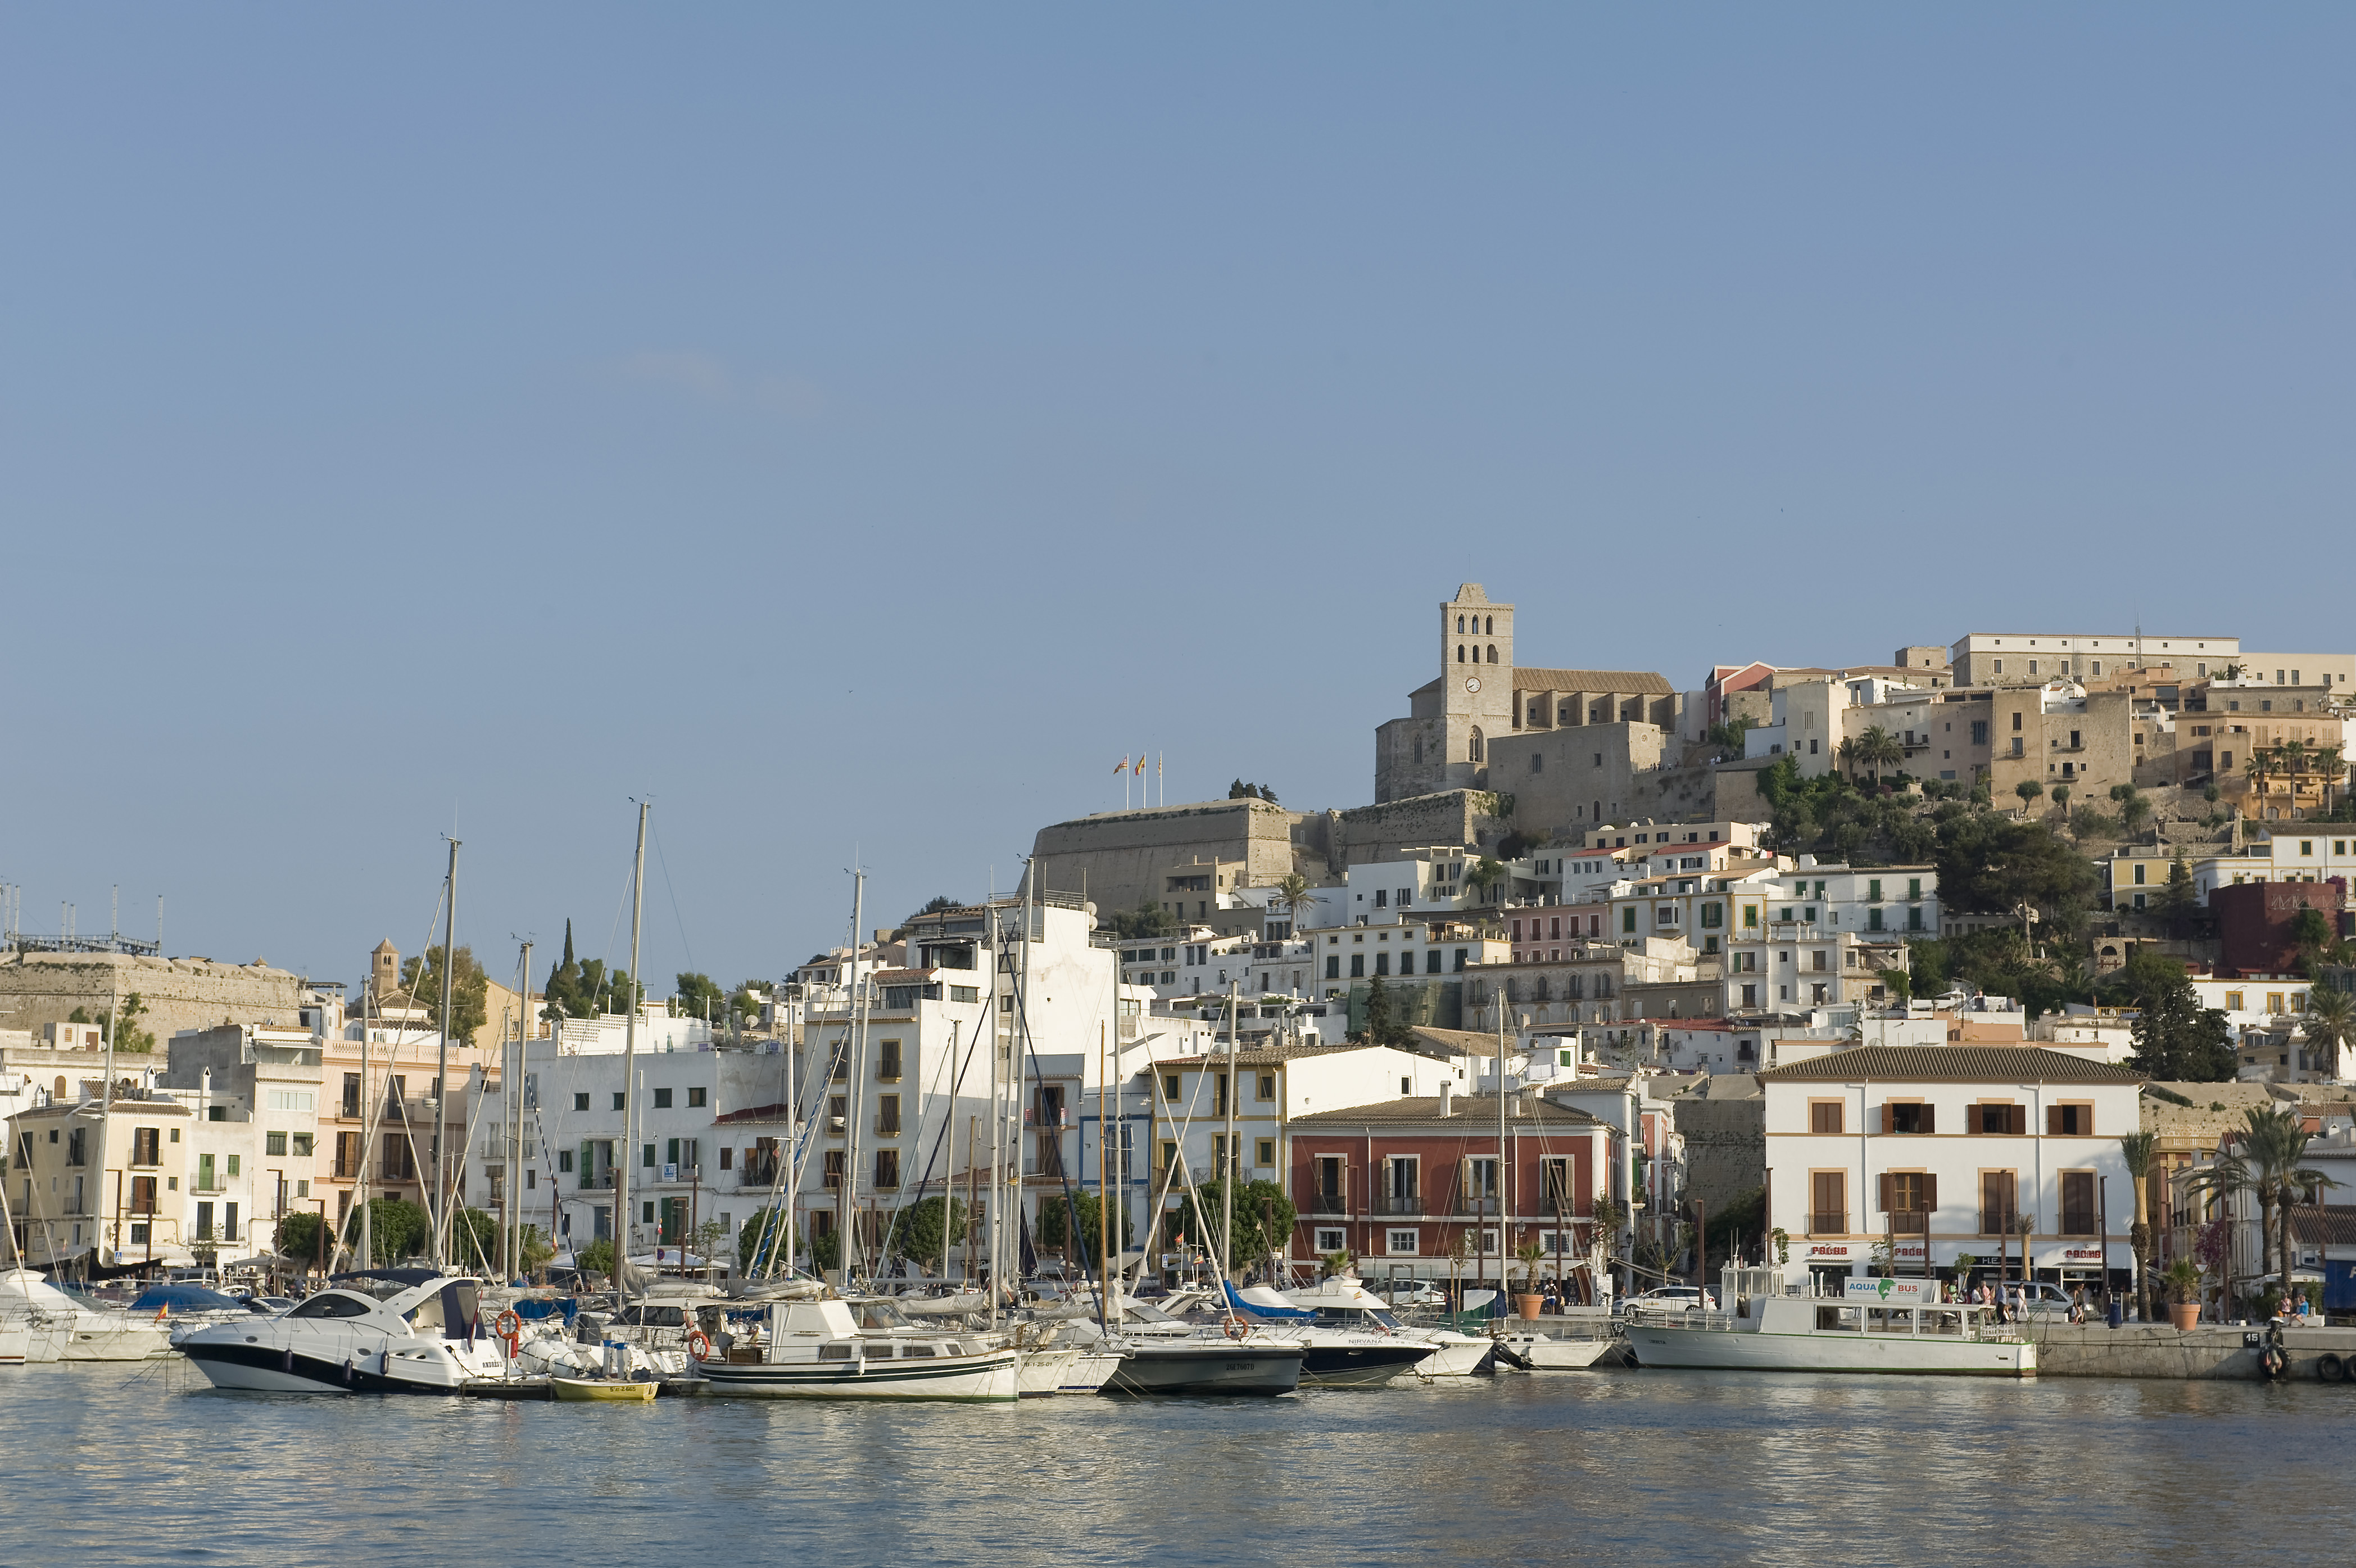 Ocibar verwaltet weiterhin die Liegeplätze im westlichen Hafenbecken von Ibiza 